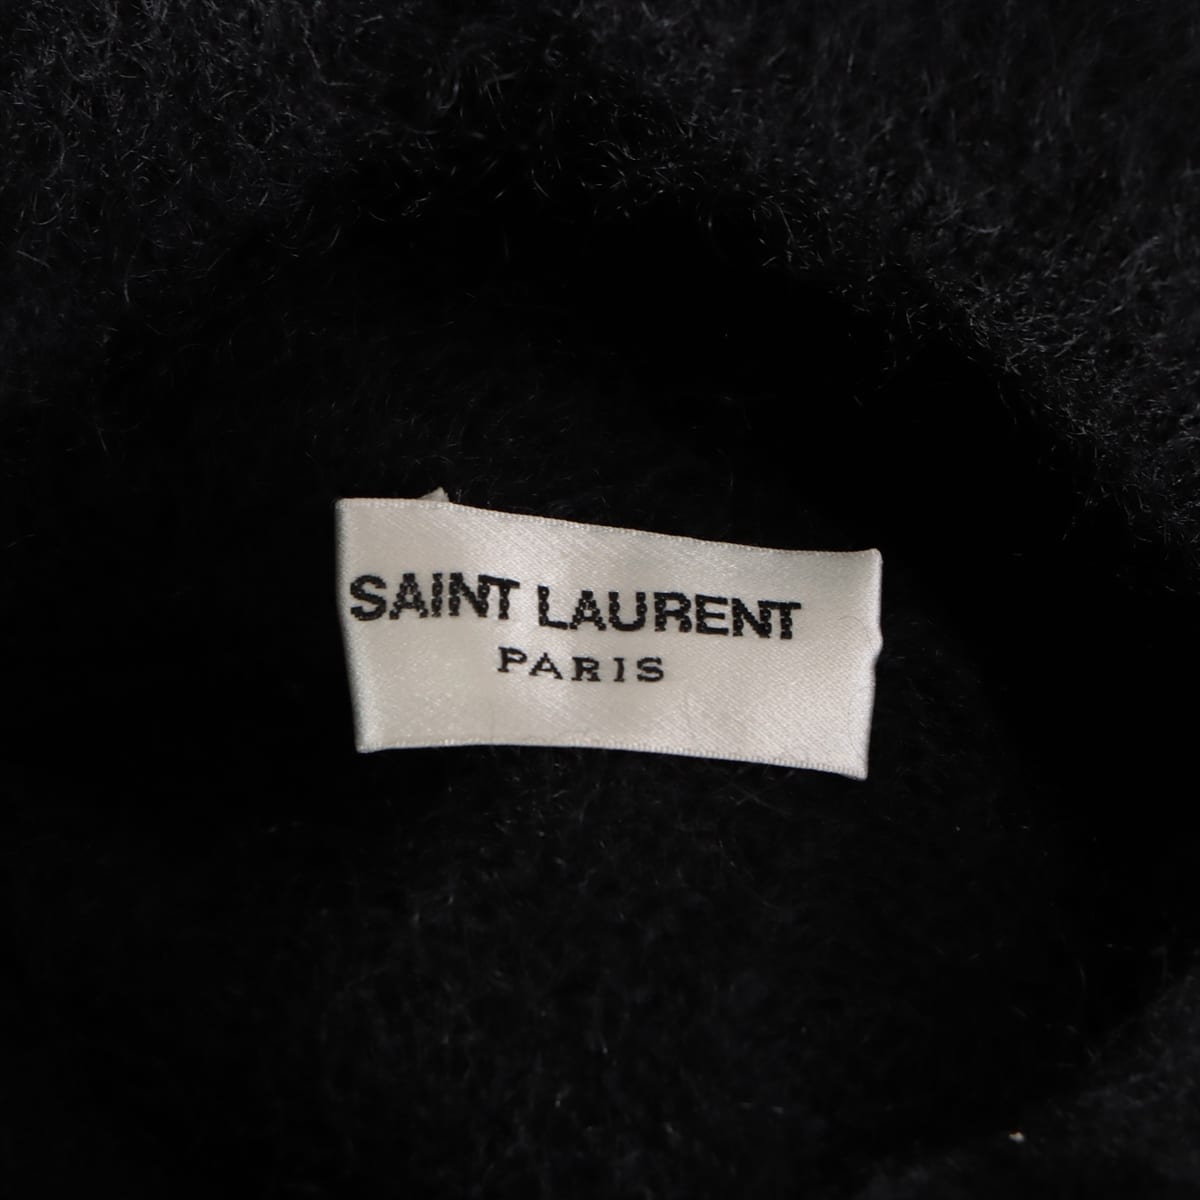 Saint Laurent Paris 20 years Mohair x nylon x hair Turtleneck Knit L Men's Black